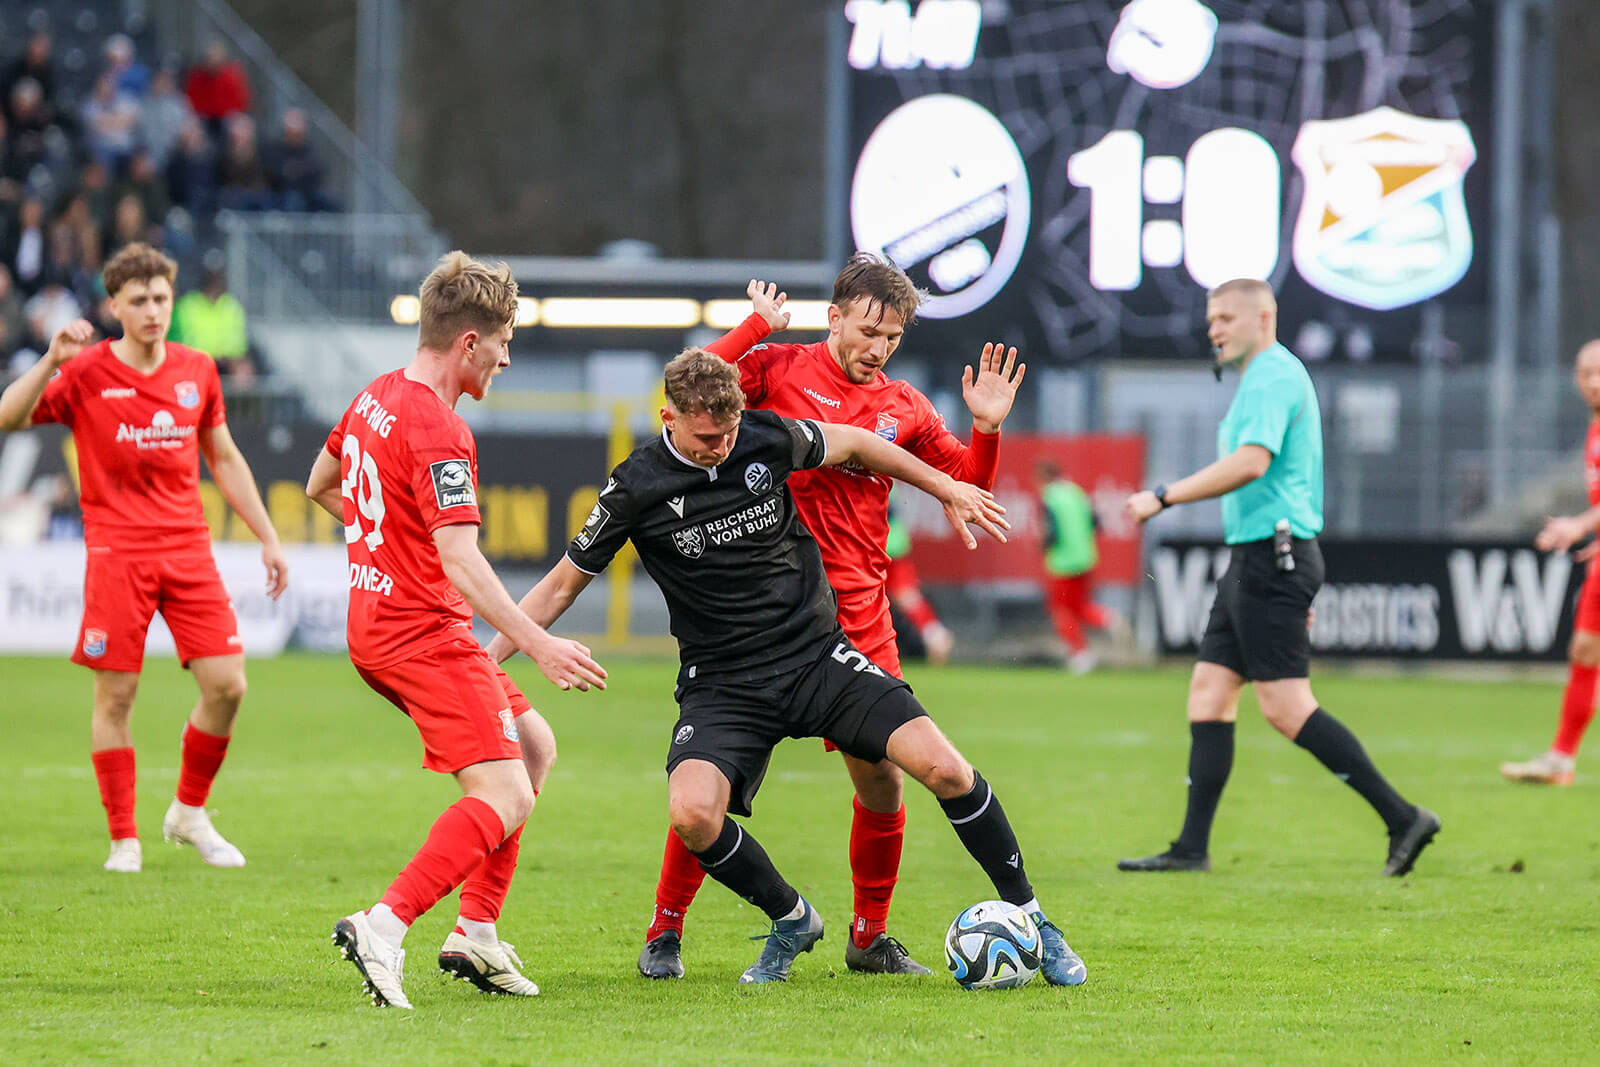  Lion Schuster (#5, SV Sandhausen) im Duell am Ball beim Spiel SV Sandhausen - Spvgg. Unterhaching. Bild: Lukas Adler